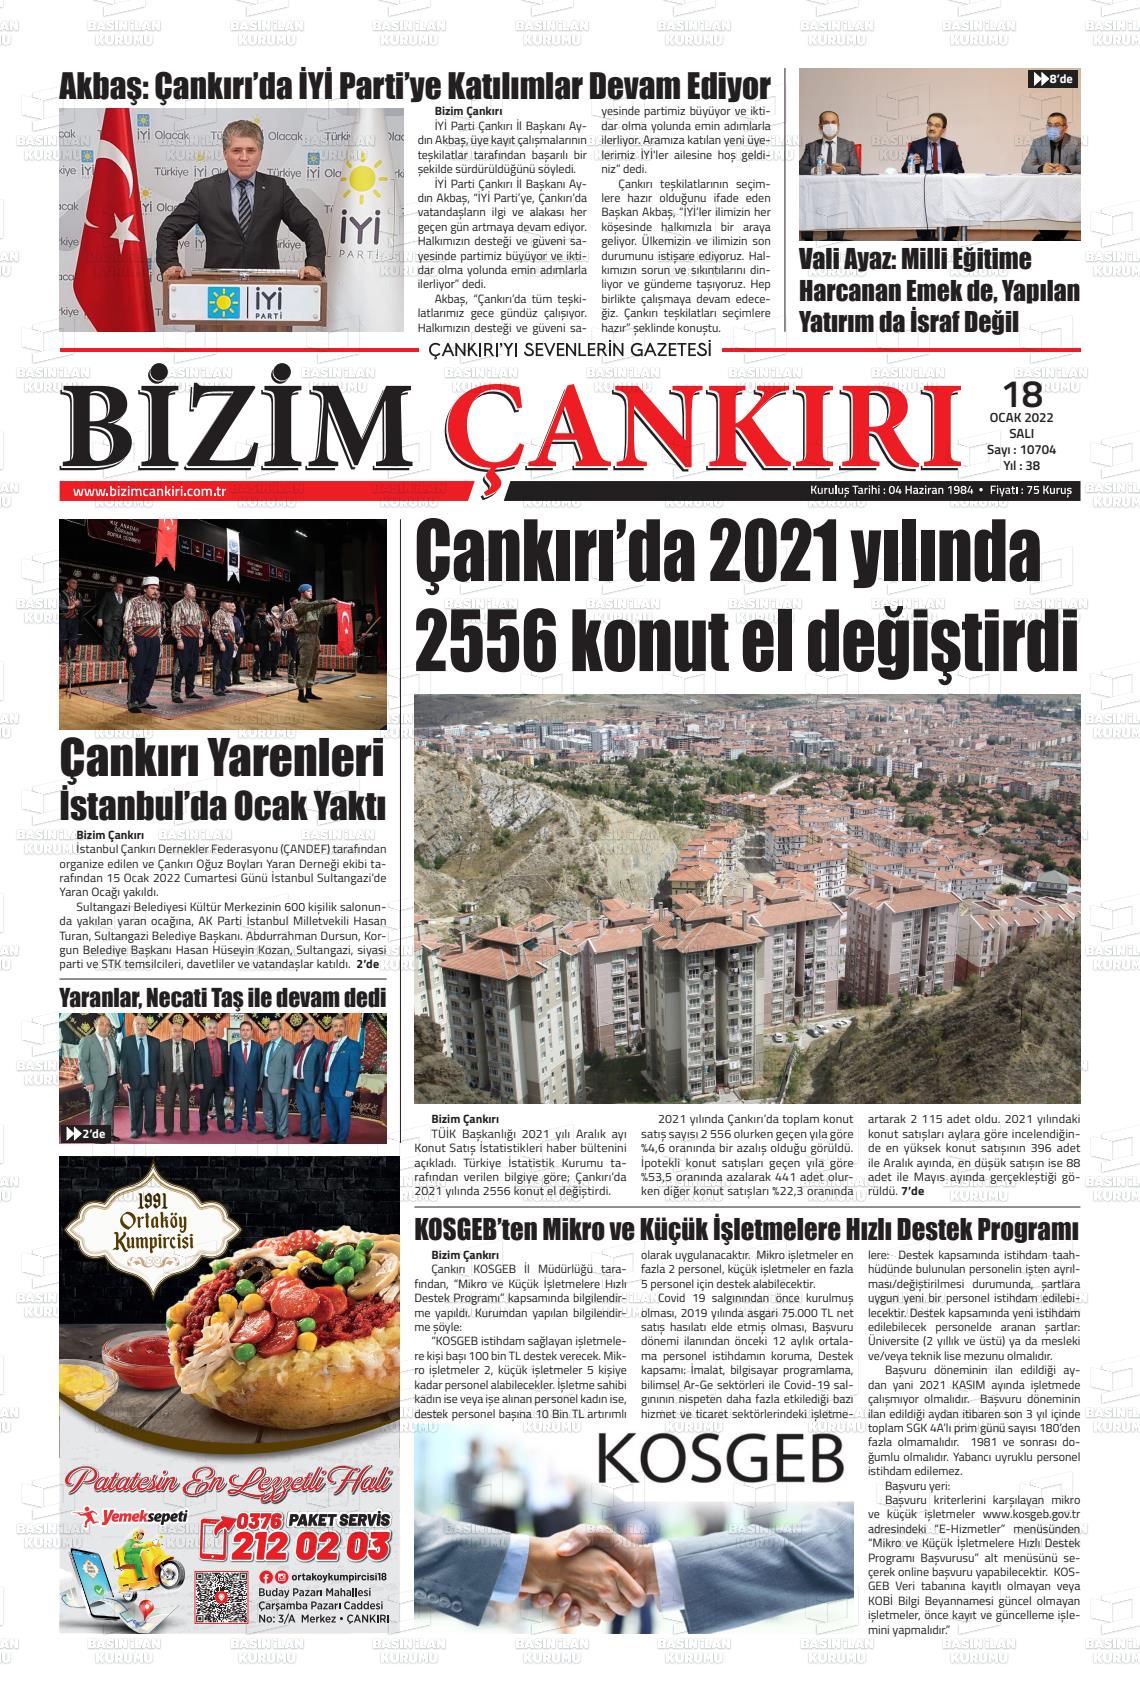 18 Ocak 2022 Bizim Çankırı Gazete Manşeti